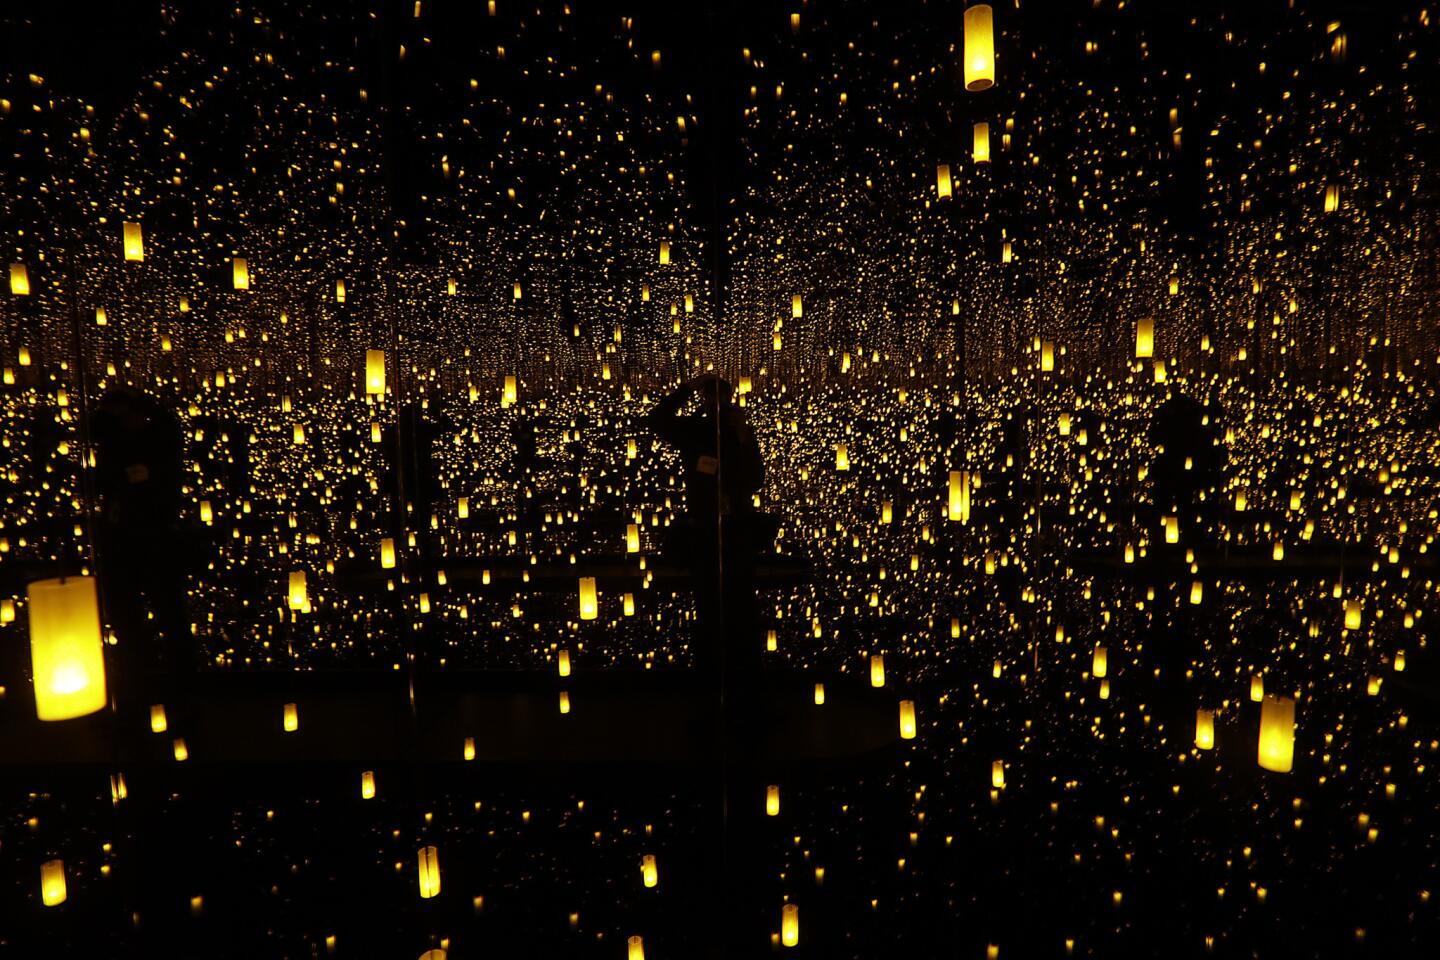 Reflecting on Yayoi Kusama at the Broad museum